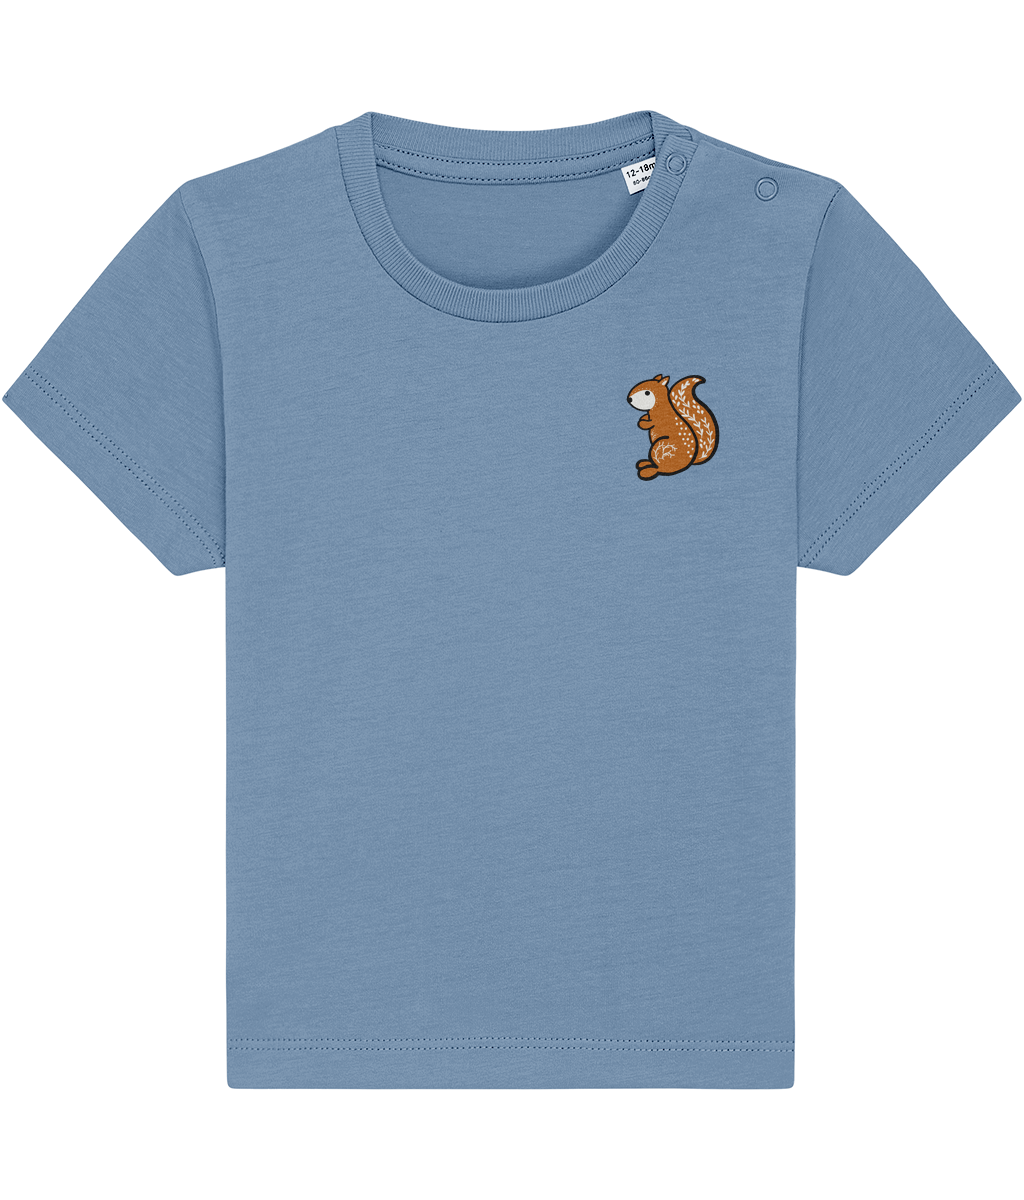 Highland Wildlife Squirrel T-shirt